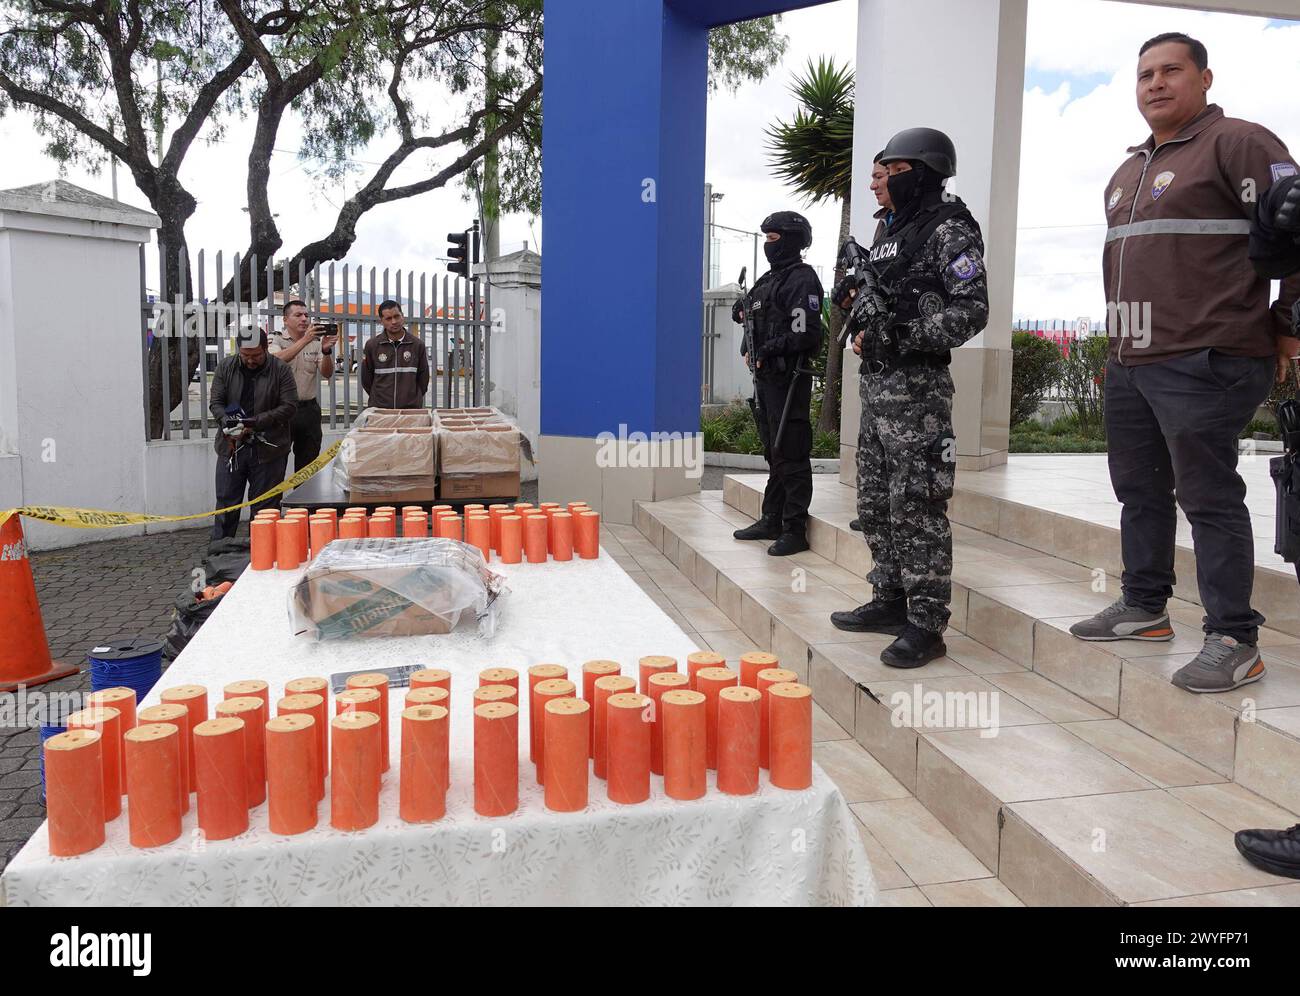 CUENCA-OPERATIVO-ALMACENAMIENTO EXPLOSIVOS Cuenca,Ecuador 6 de abril de 2024 La Direccion General de Inteligencia DGI y Policia Judicial tras labores de investigacion localizaron una vivienda donde se almacenaba explosivos, ademas se encontro una granada, balas de fusil, entre otros. Un venezolano que era parte de la agrupacion Los Lobos fue detenido. En la Policia Judicial del Azuay el CoronelWalter Villamarin en rueda de prensa dio detalle de lo que fue el operativo la noche de ayer. foto Boris Romoleroux/API. CLJ-CUENCA-OPERATIVO-ALMACENAMIENTOEXPLOSIVOS-72e026434c24d10a9d0c8a55f49e907f *** Stock Photo